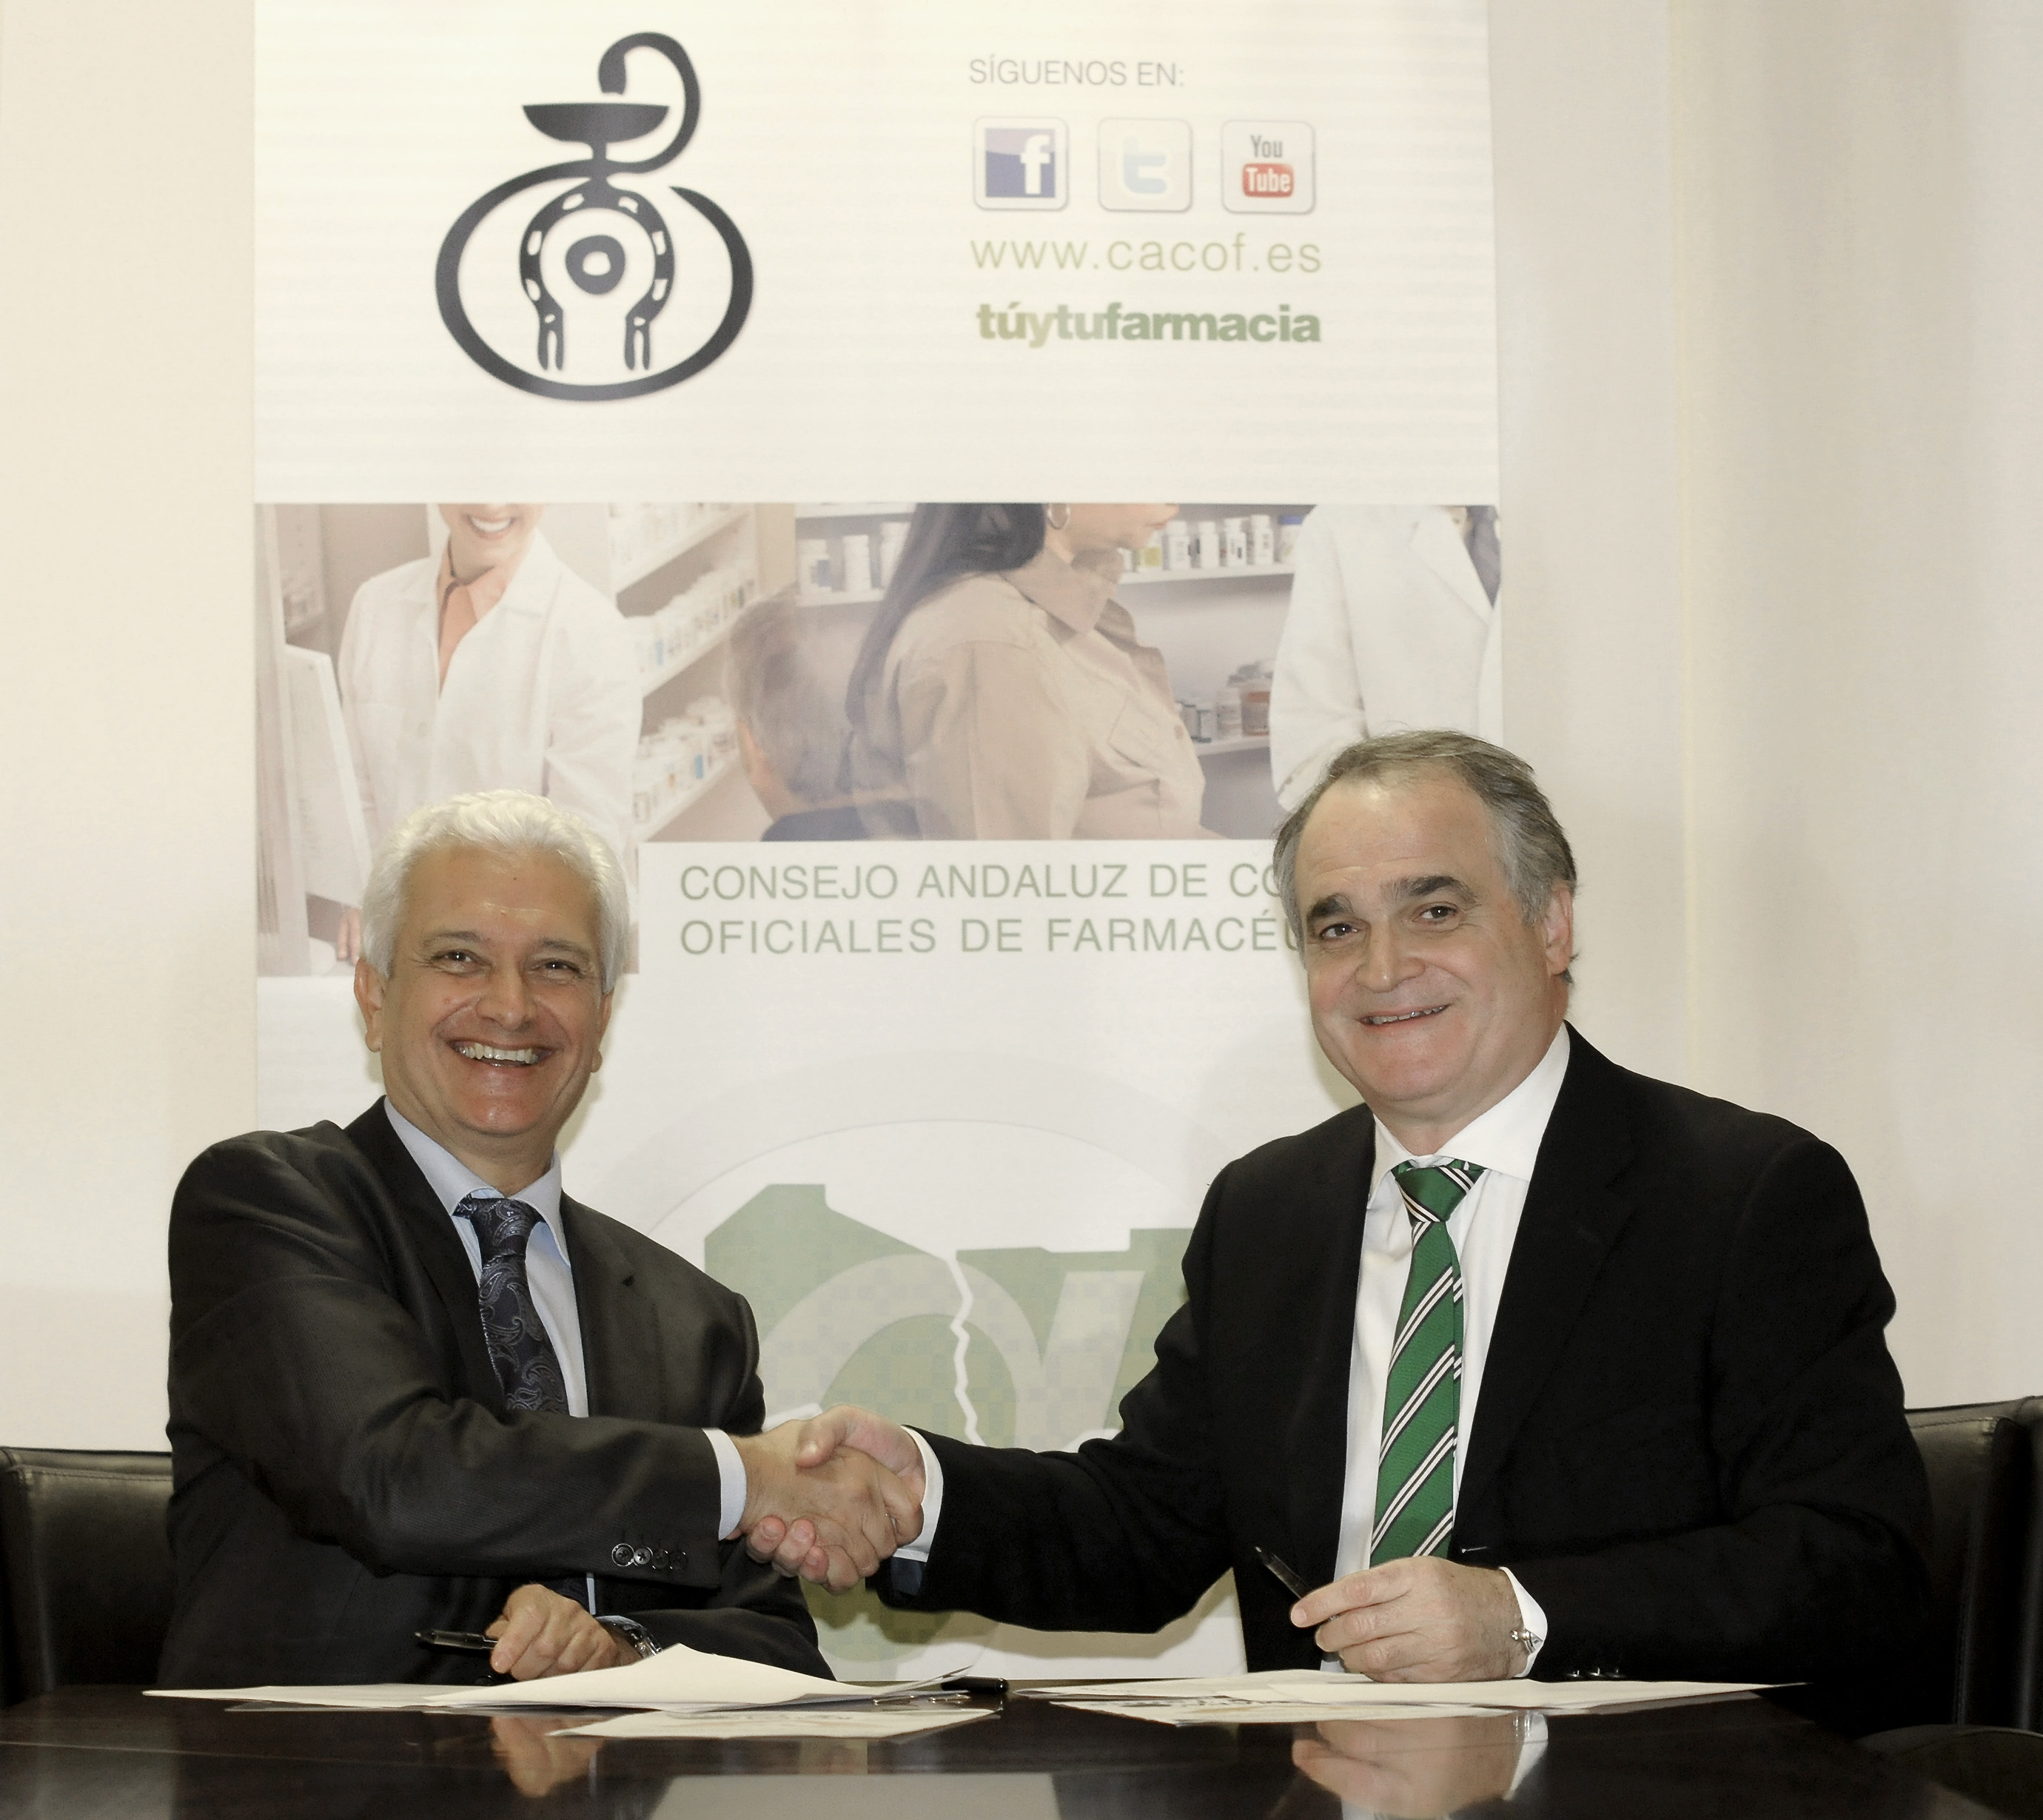 Esteve y el Consejo Andaluz de Colegios de Farmacéuticos colaboran en el pilotaje del proyecto MAPAfarma, iniciado en 33 farmacias andaluzas